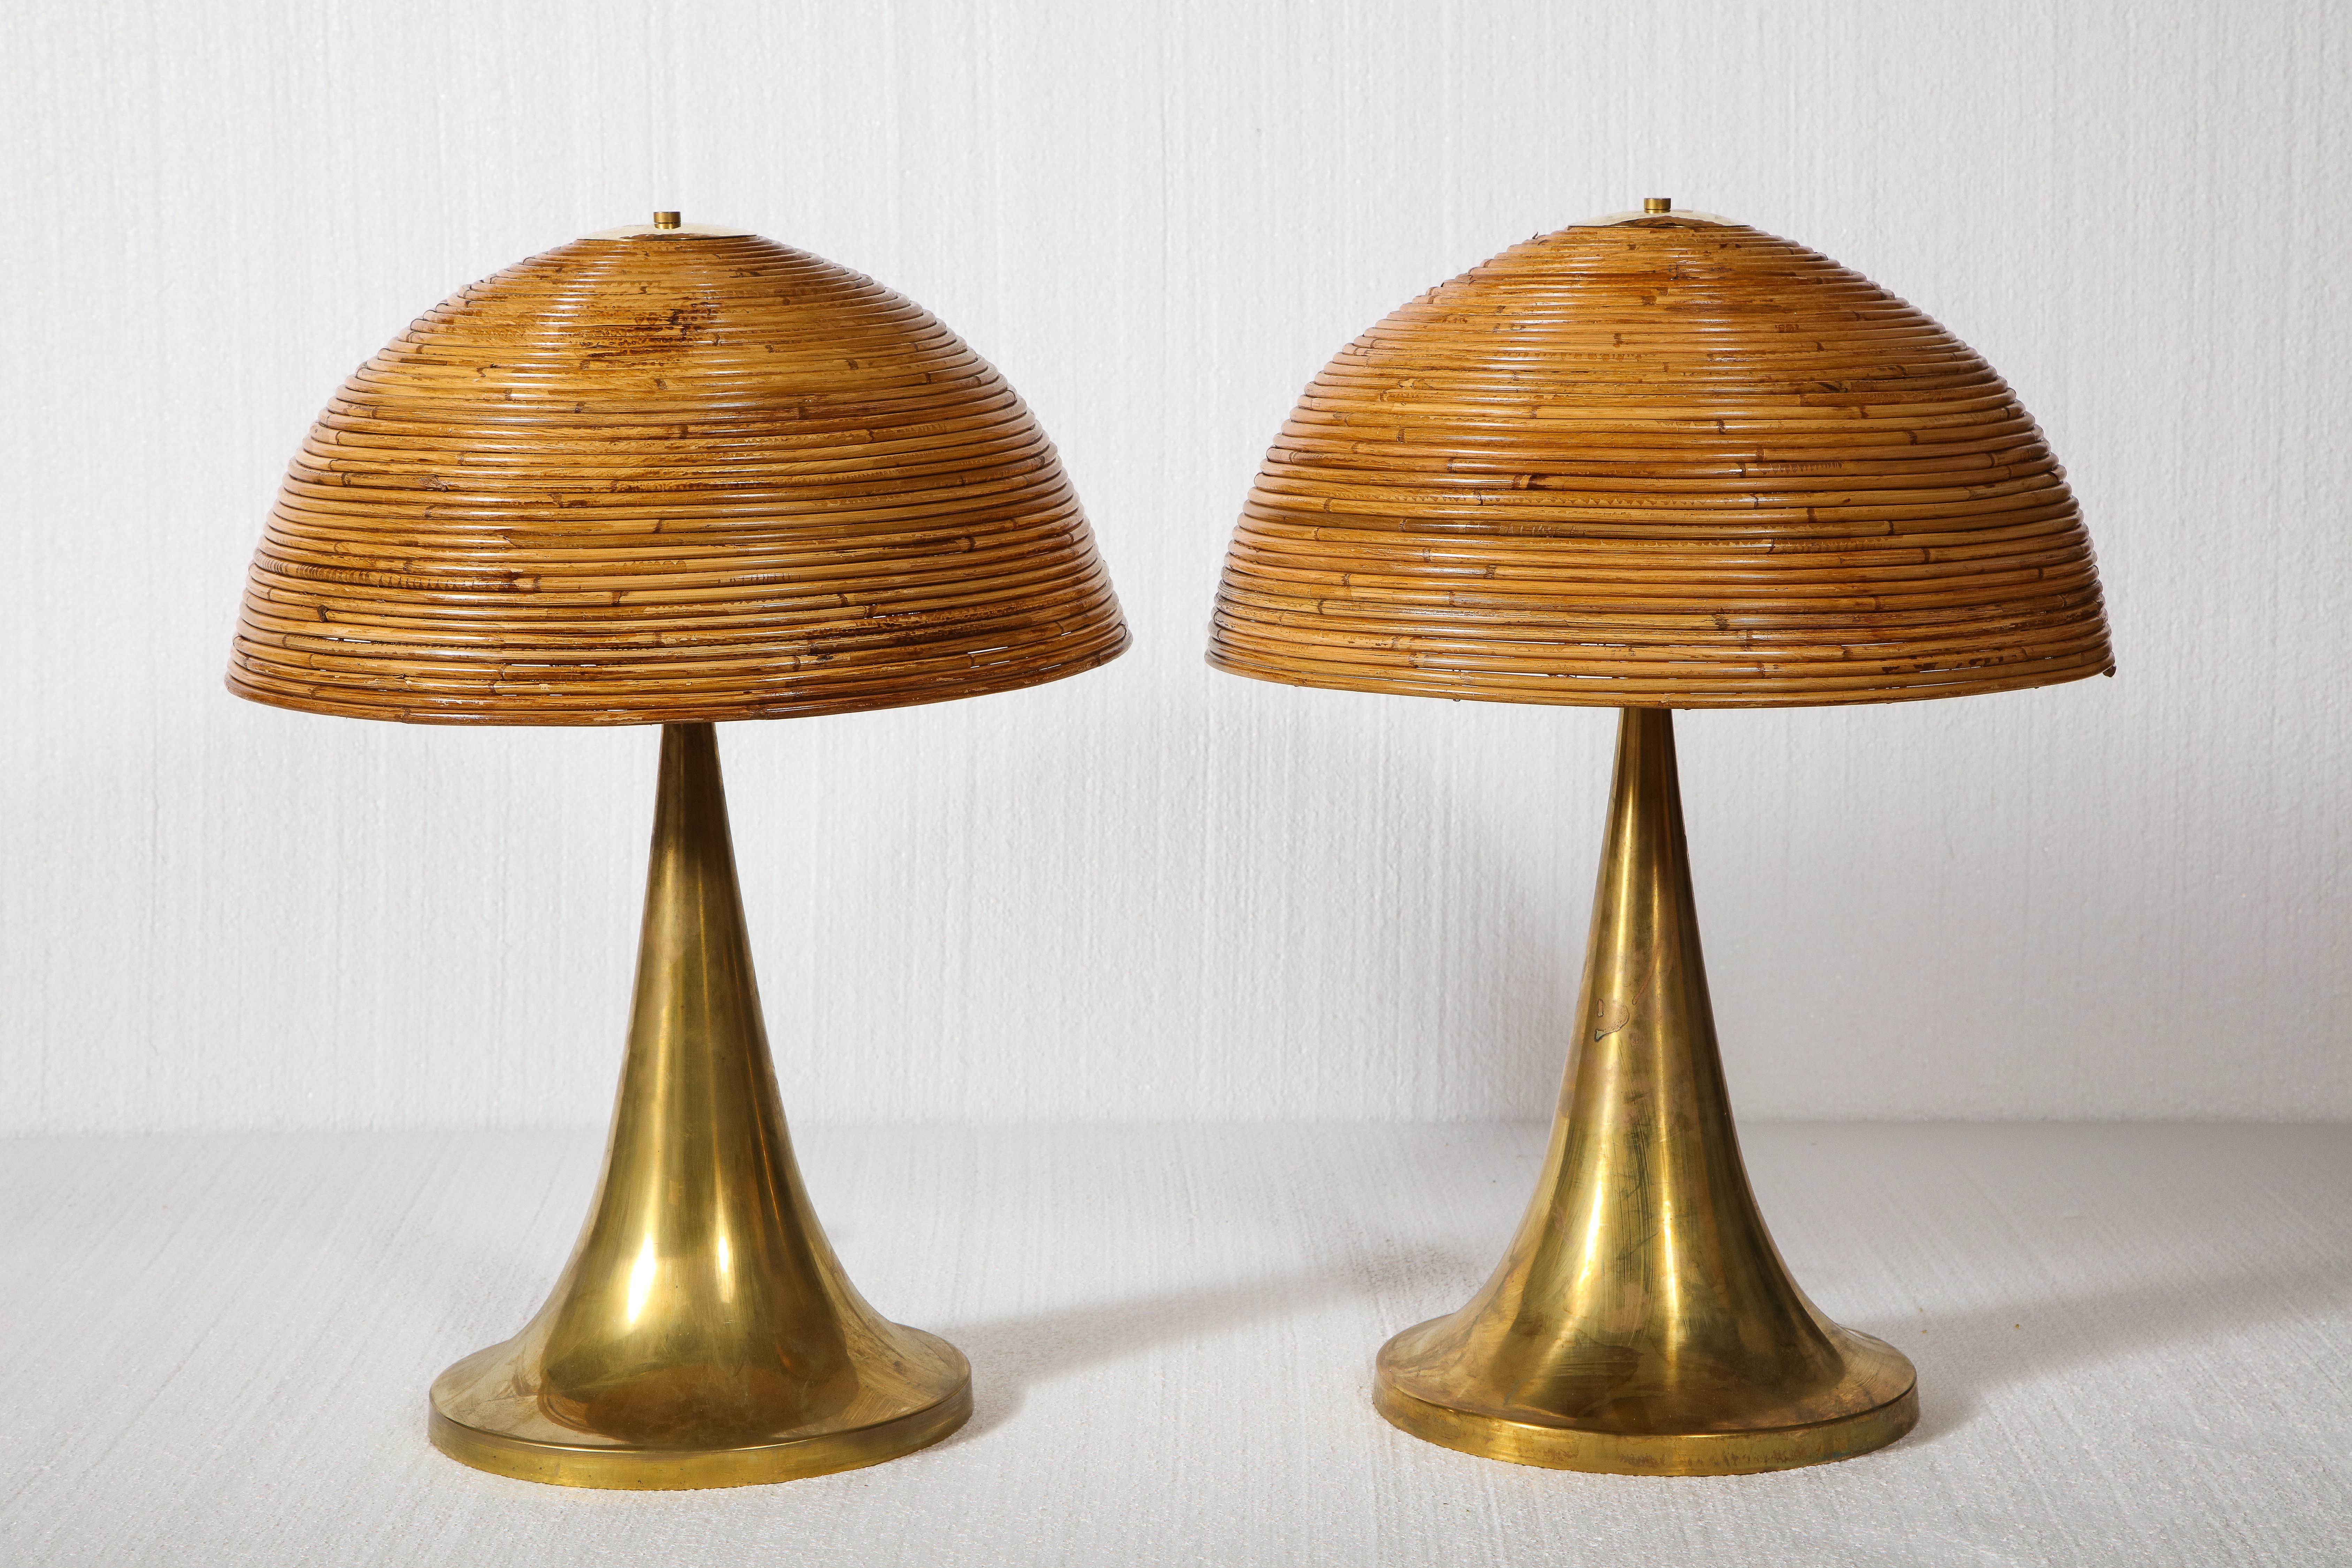 große Bambus-Tischlampen mit Messingfuß.

Schöne und schicke Tischlampen. Schöne Messingbasen und Bambusplatten, die von einer Messingplatte gehalten werden.